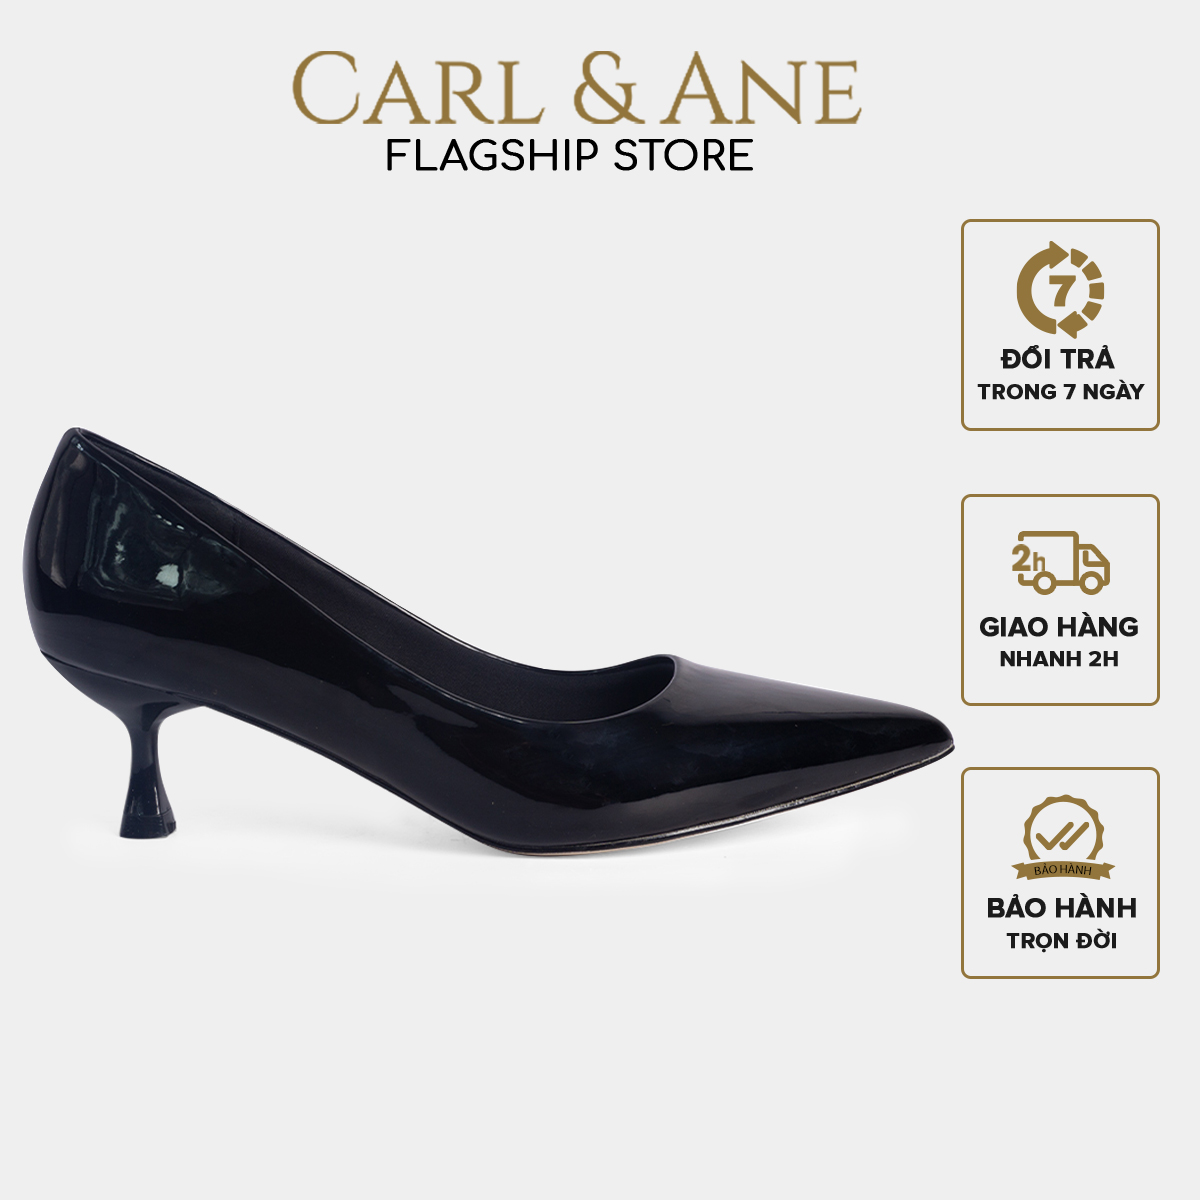 Carl & Ane - Giày cao gót thời trang nữ mũi nhọn kiểu dáng công sở cao 4cm màu đen - CP009